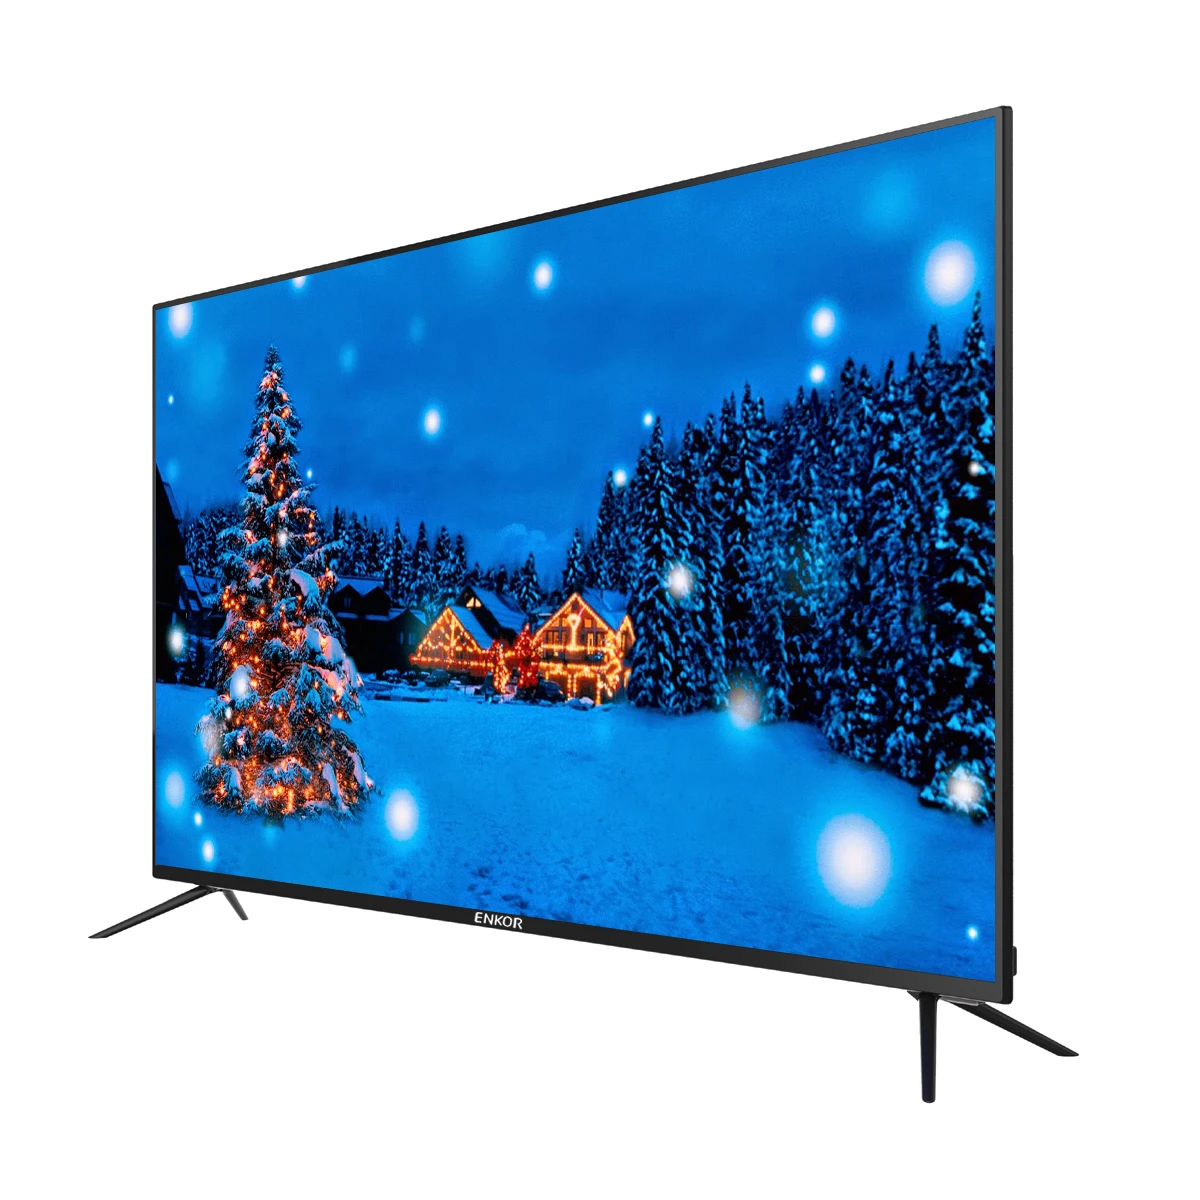 Оптовая продажа, большой экран Fhd 1080P, 48 дюймов, умный Телевизор (62012093714)